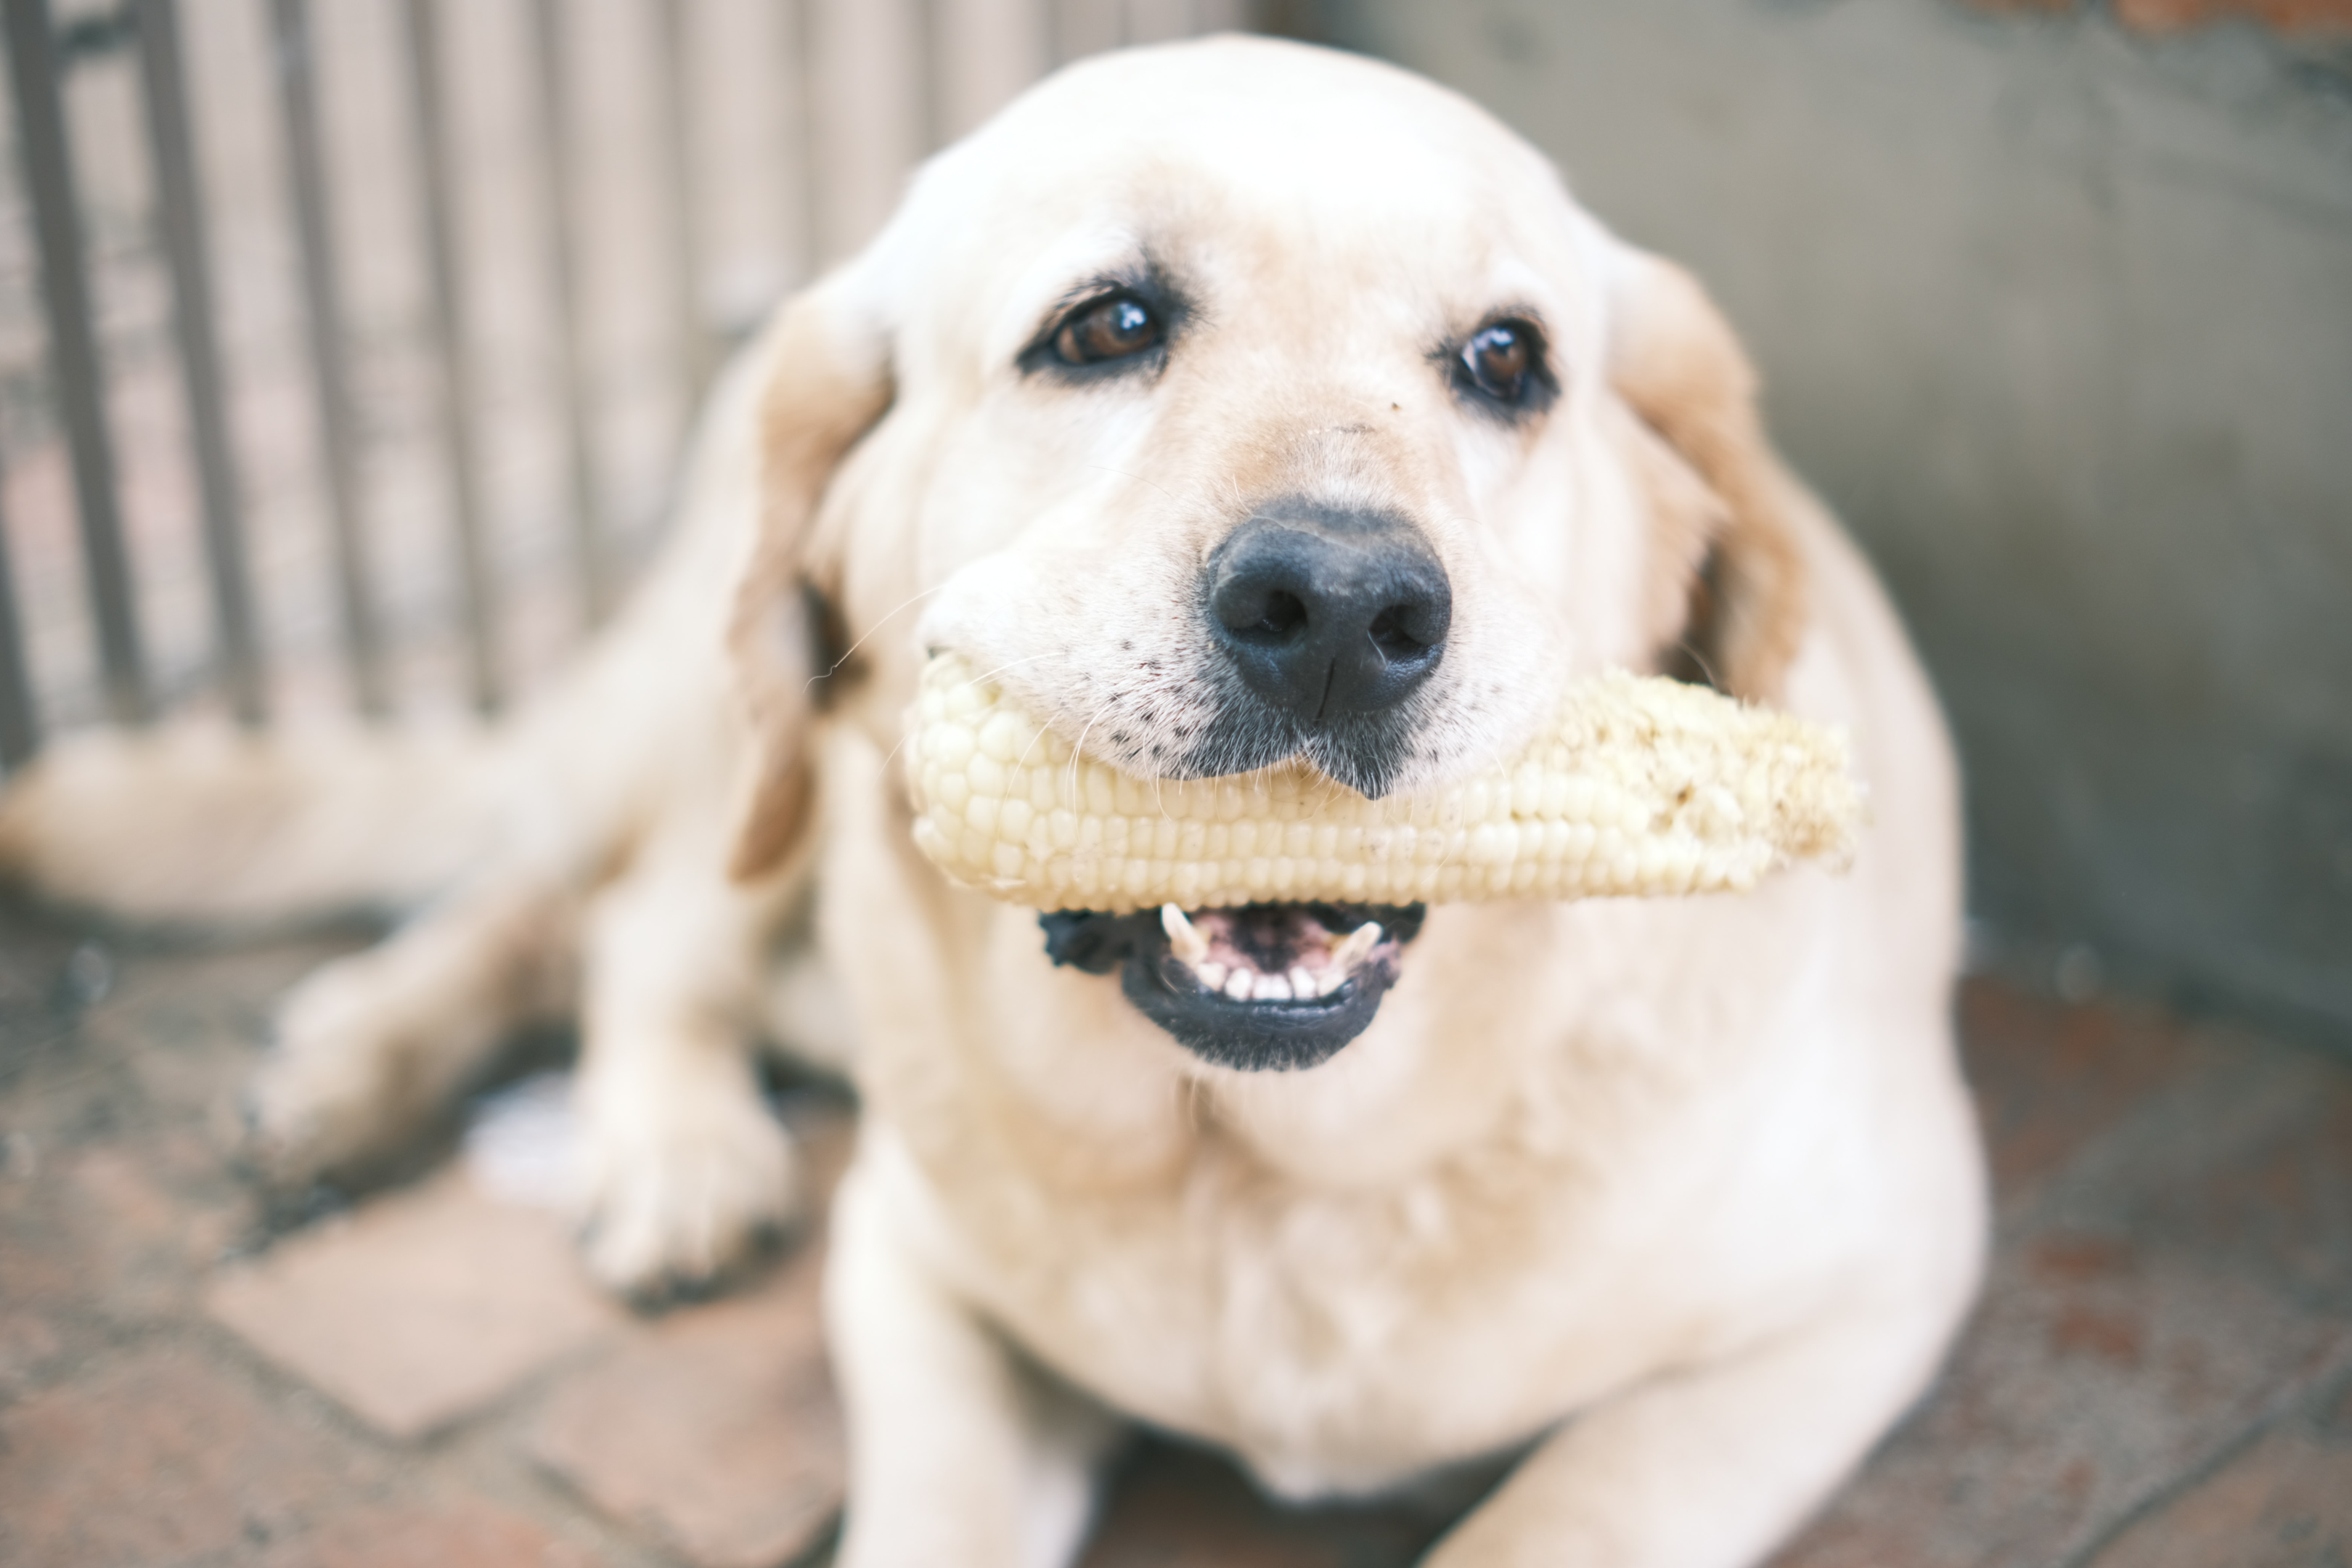 senior Labrador Retriever biting a corn cob